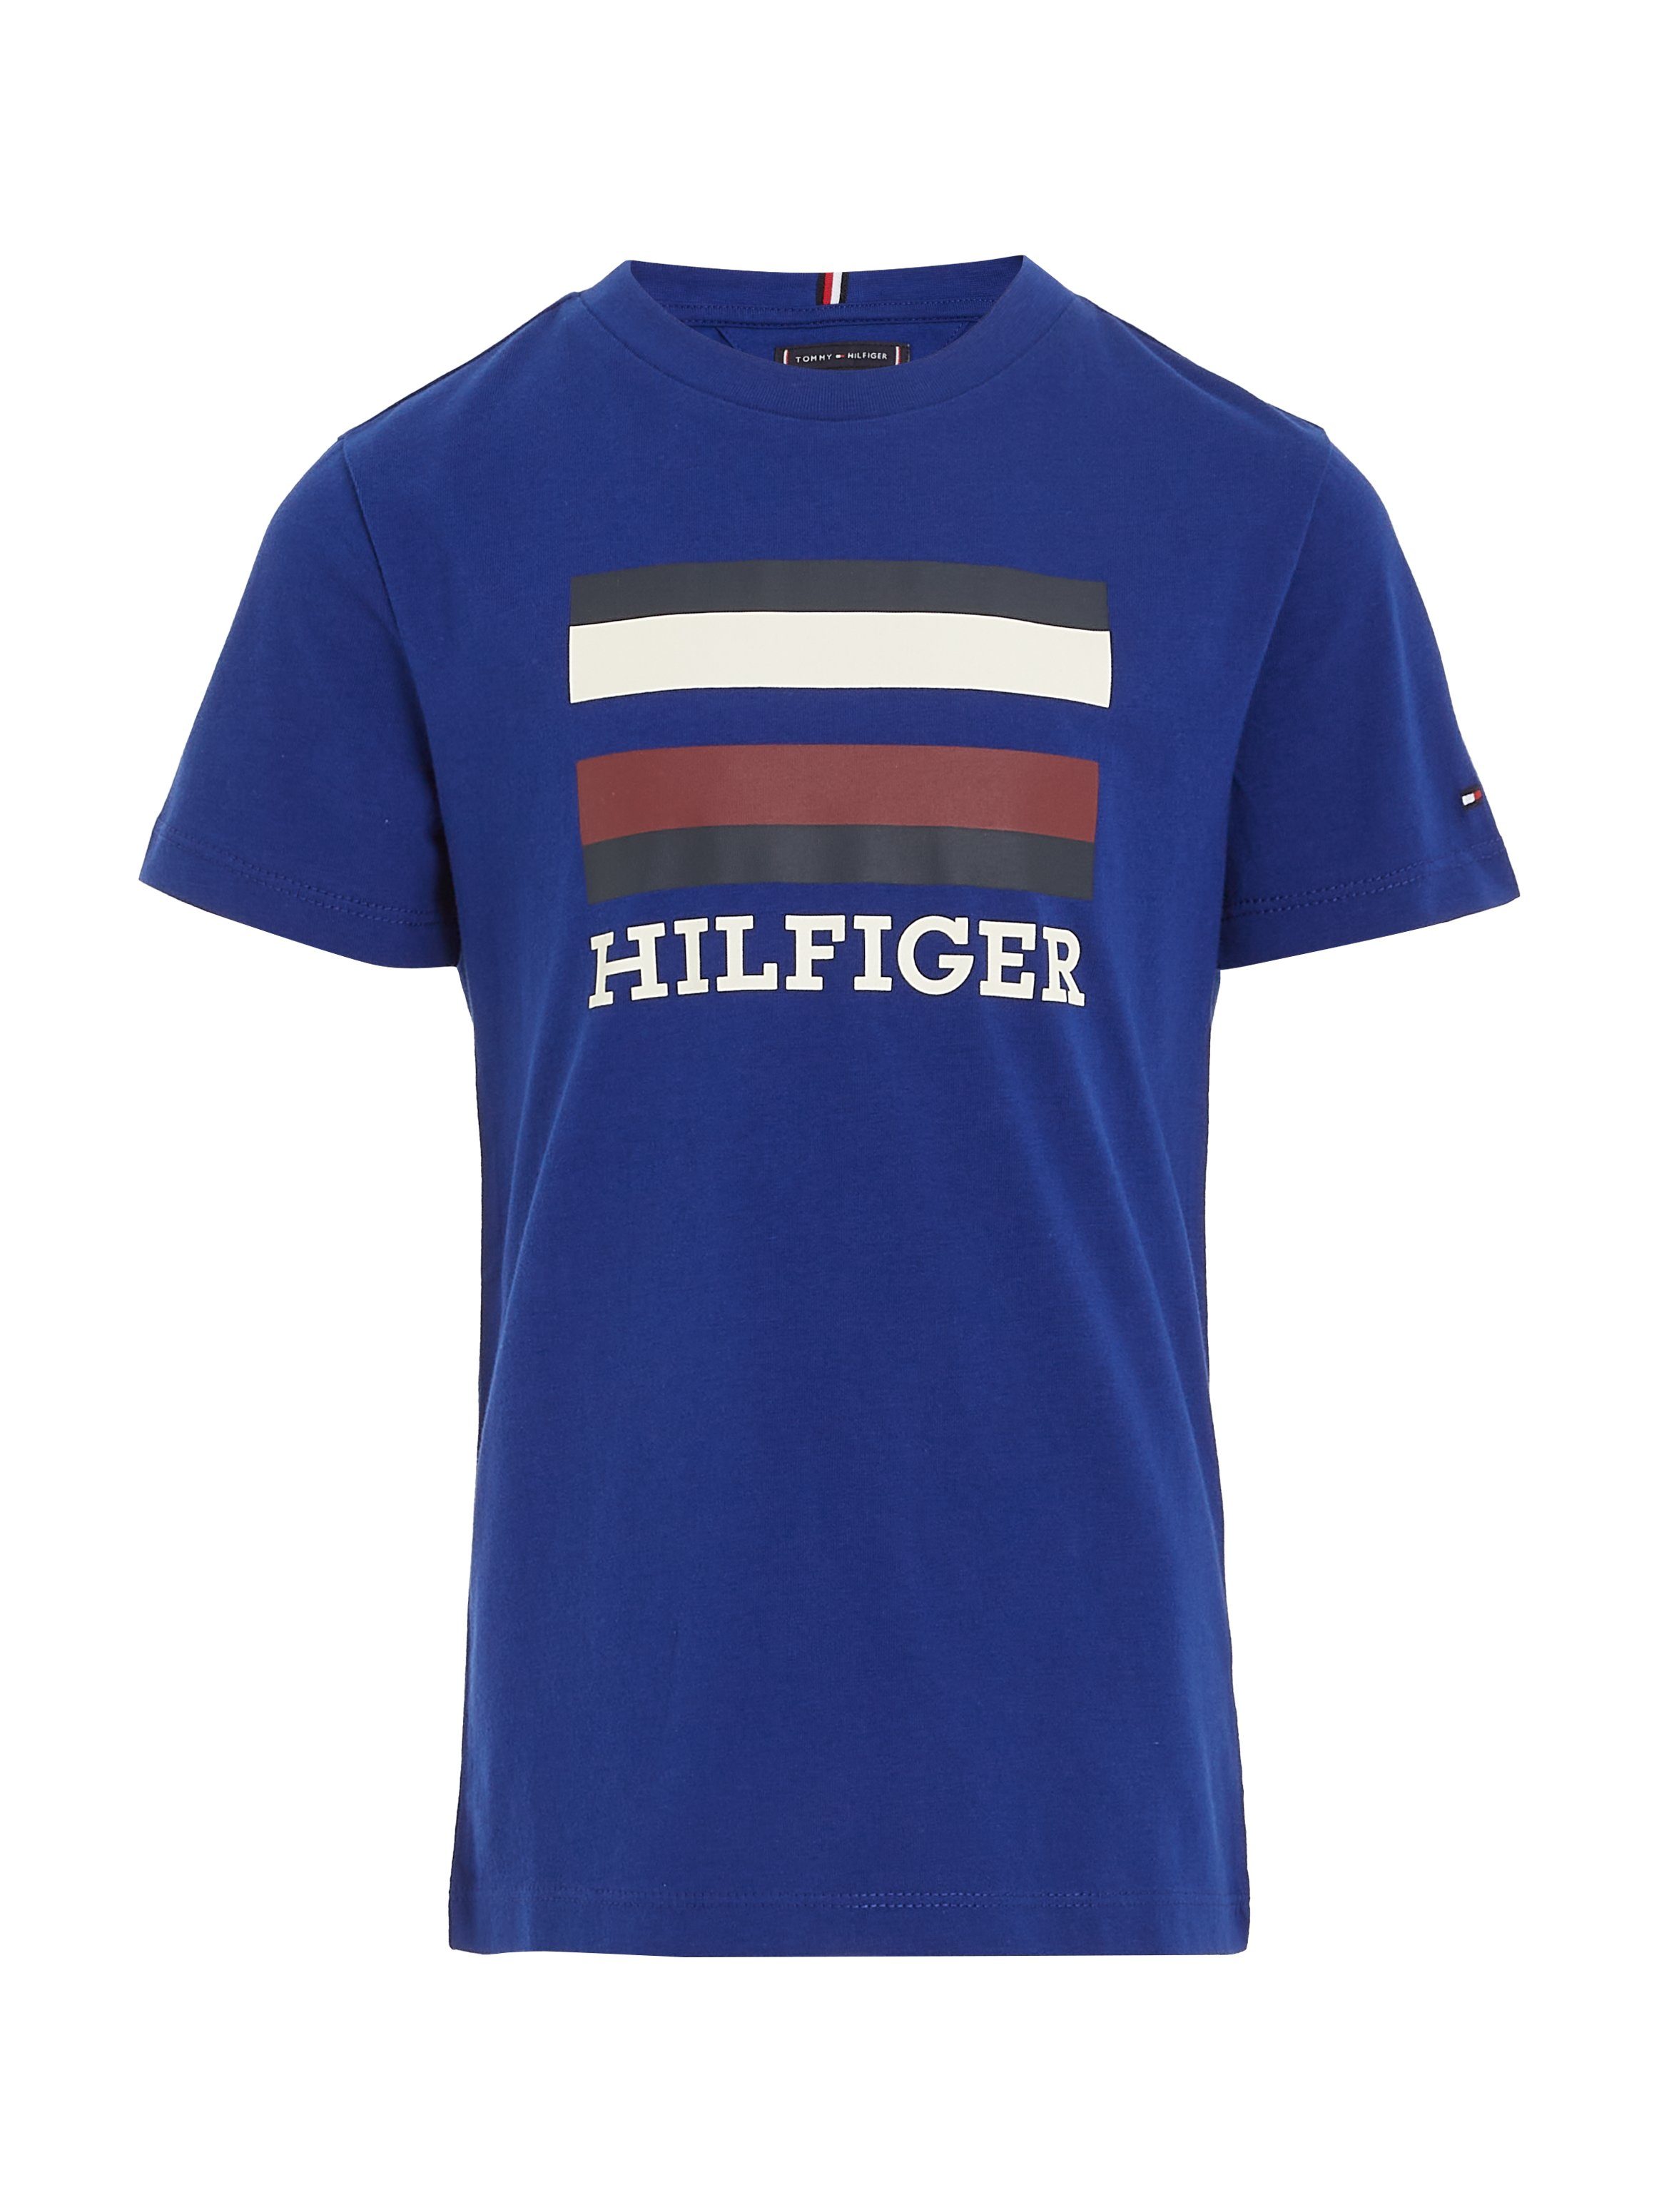 S/S Navy T-Shirt Logo-Schriftzug mit & TH Frontprint Hilfiger Voyage TEE großem LOGO Tommy Hilfiger